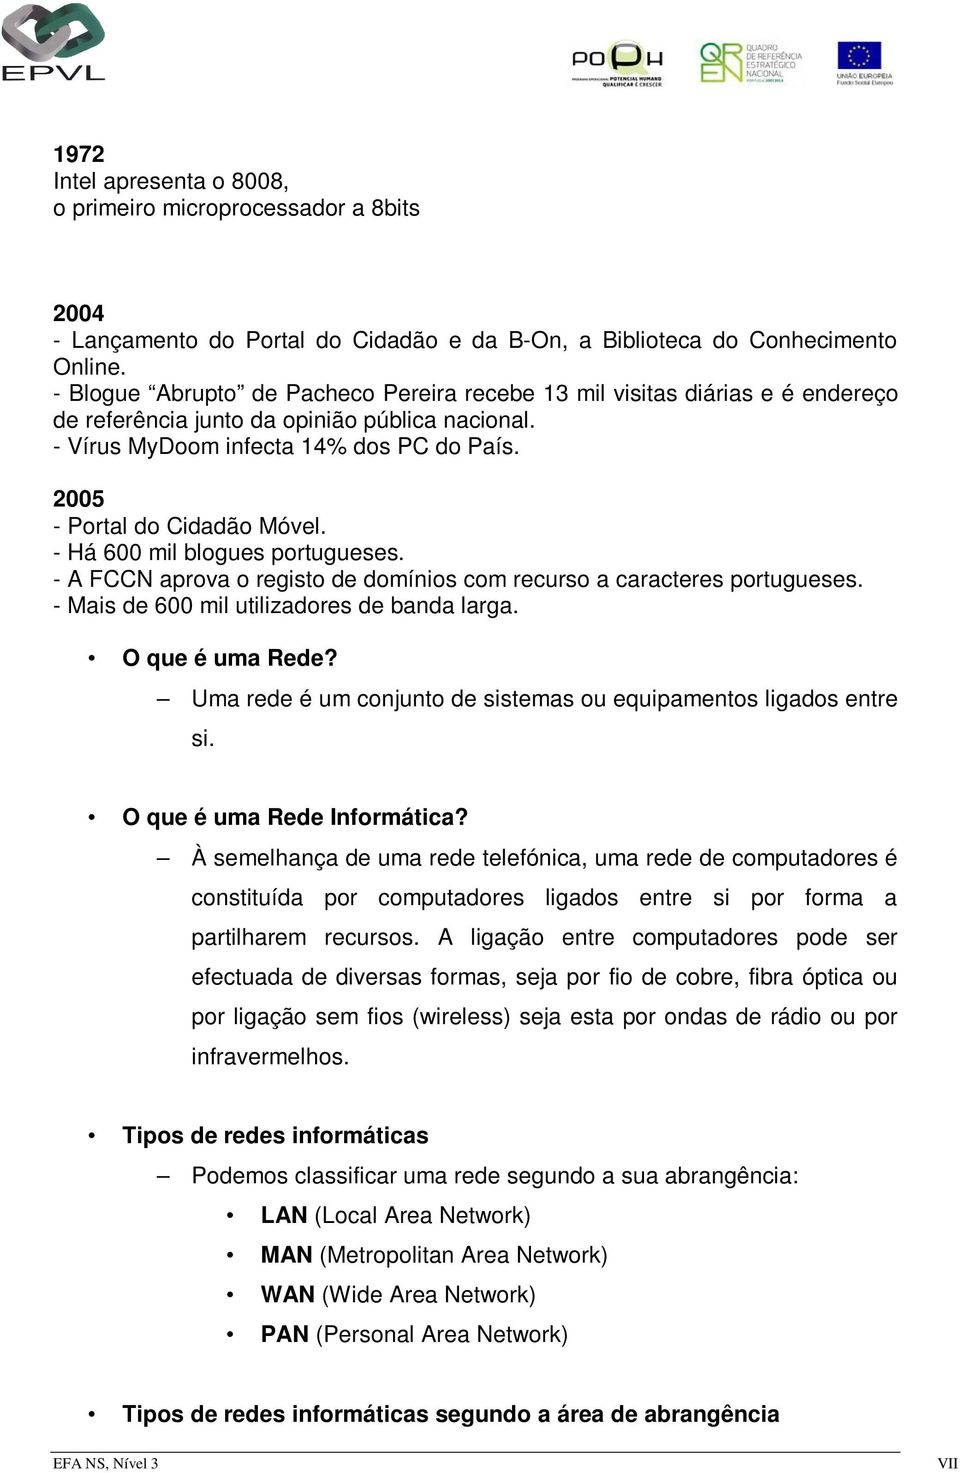 2005 - Portal do Cidadão Móvel. - Há 600 mil blogues portugueses. - A FCCN aprova o registo de domínios com recurso a caracteres portugueses. - Mais de 600 mil utilizadores de banda larga.